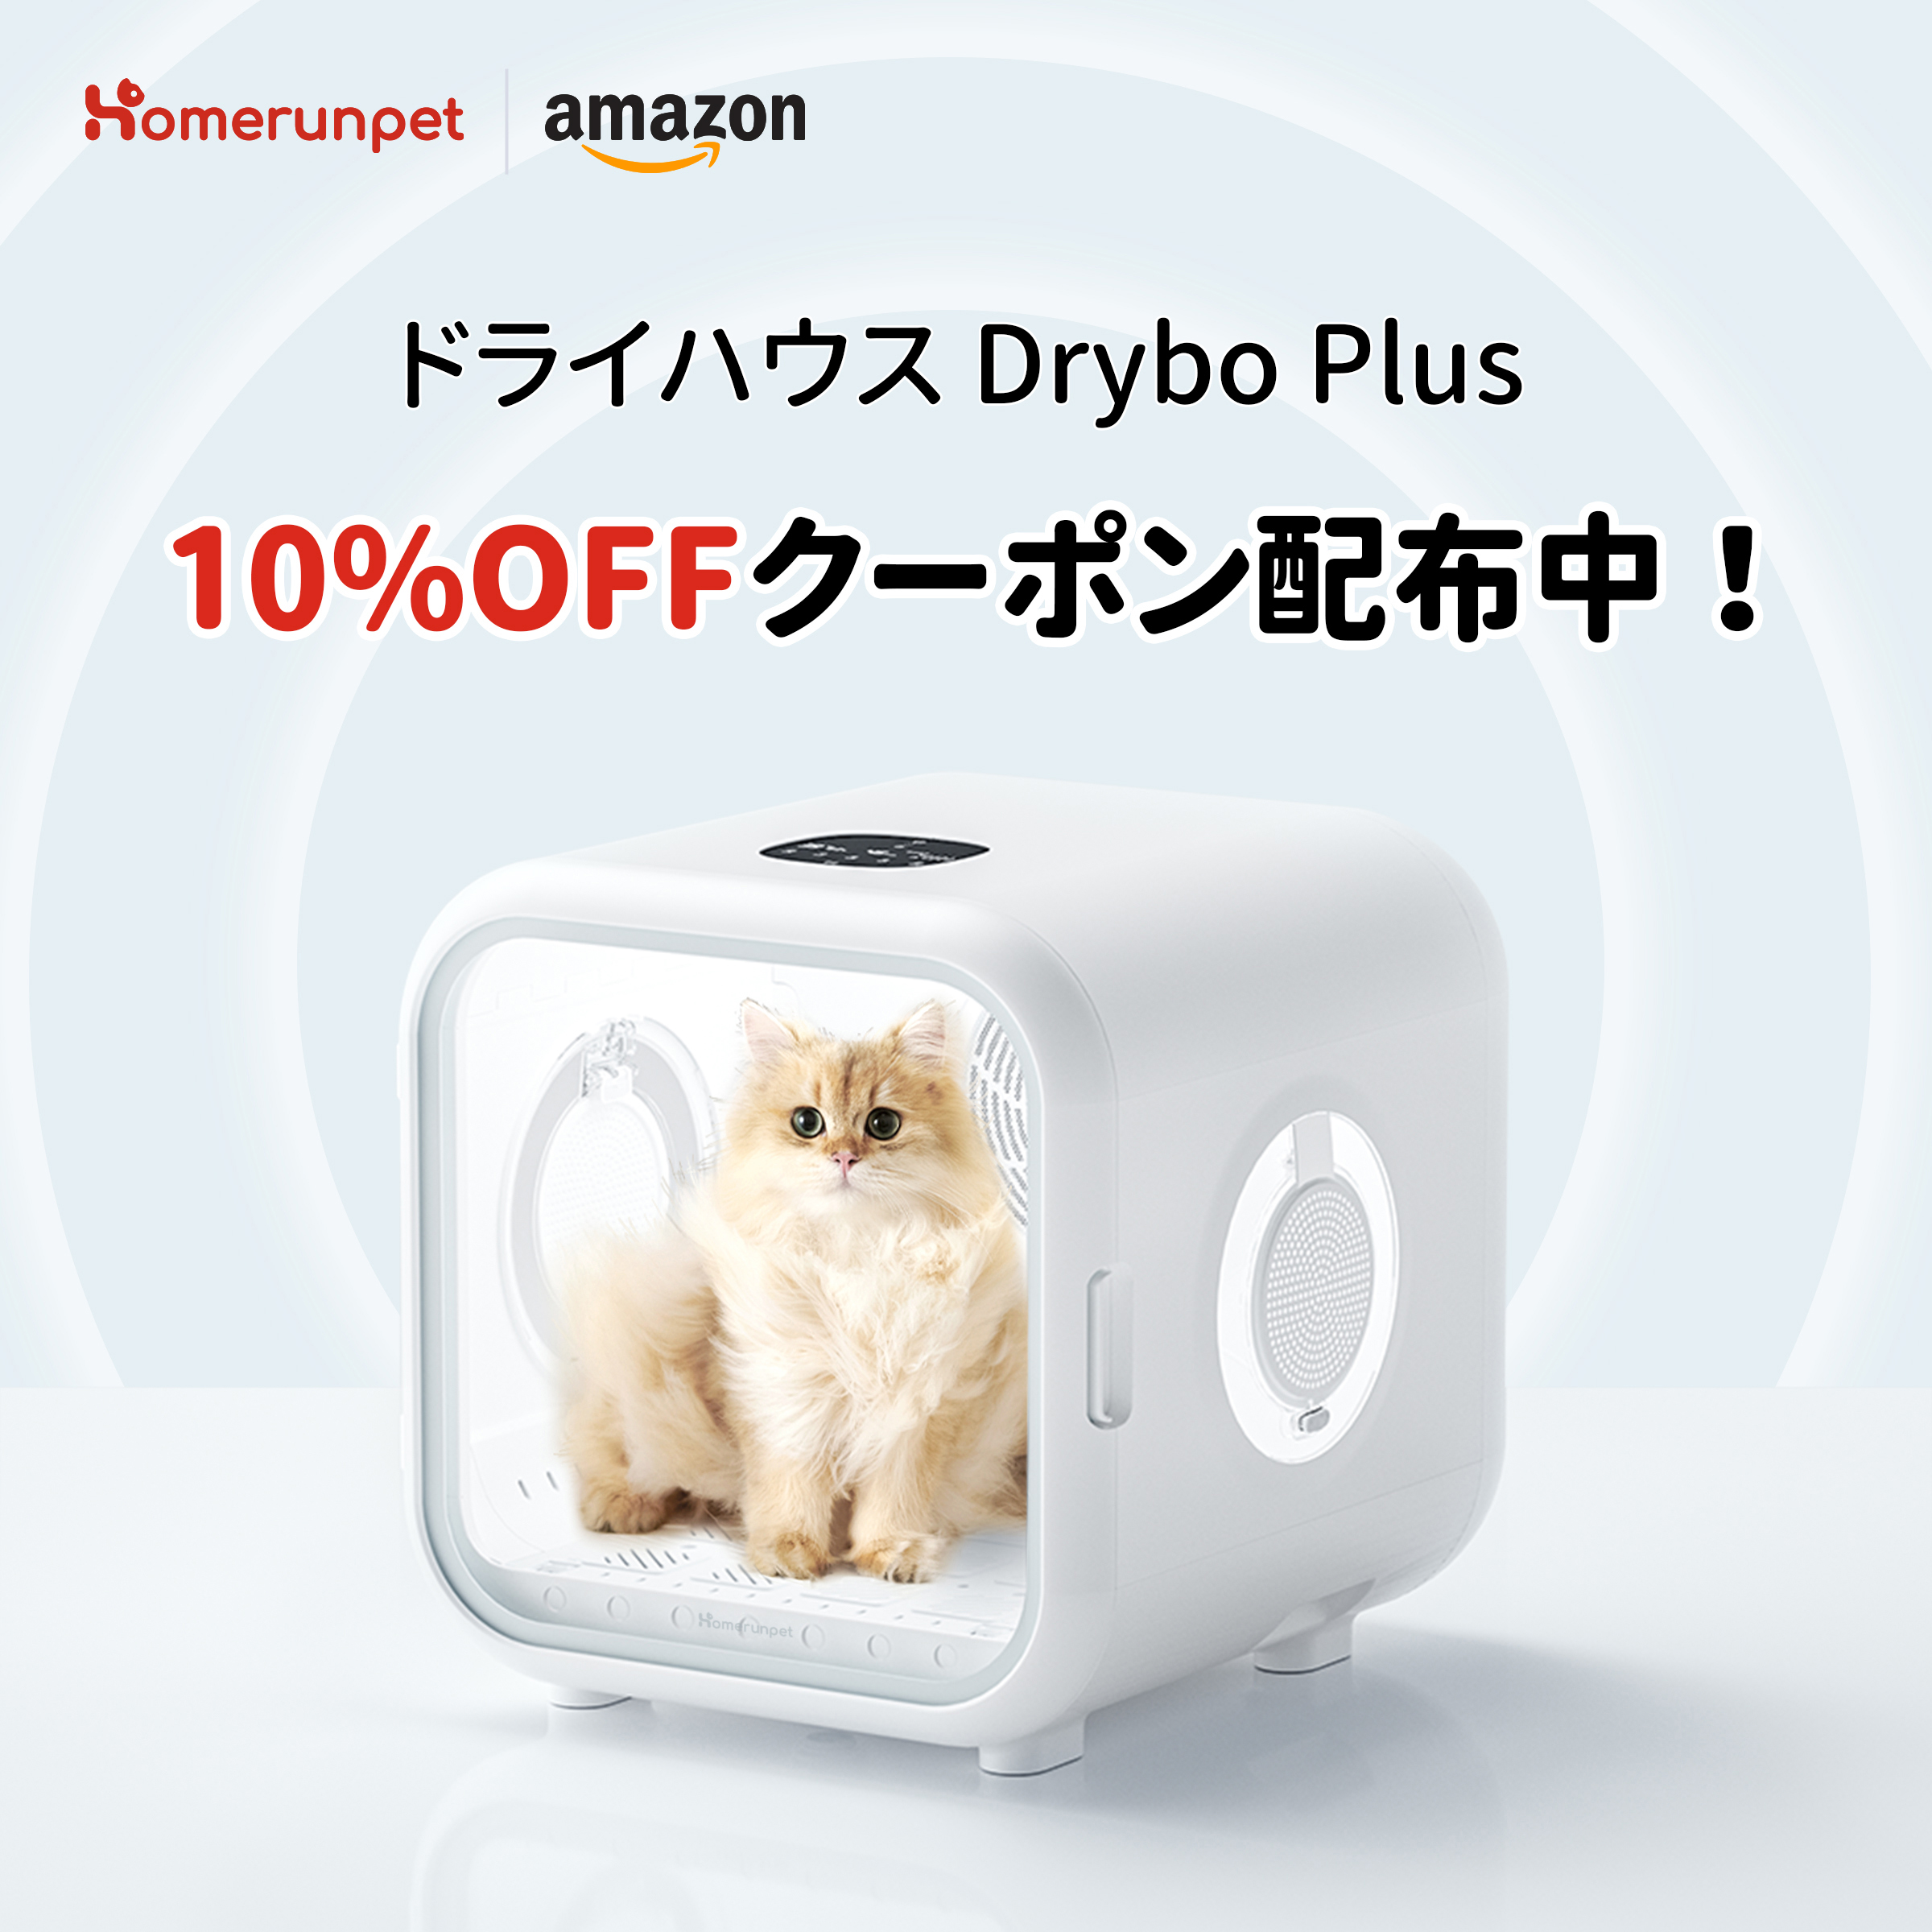 【売れ筋】  ドライヤーハウス Plus 【本日発送可能】【35%引】Drybo 猫用品